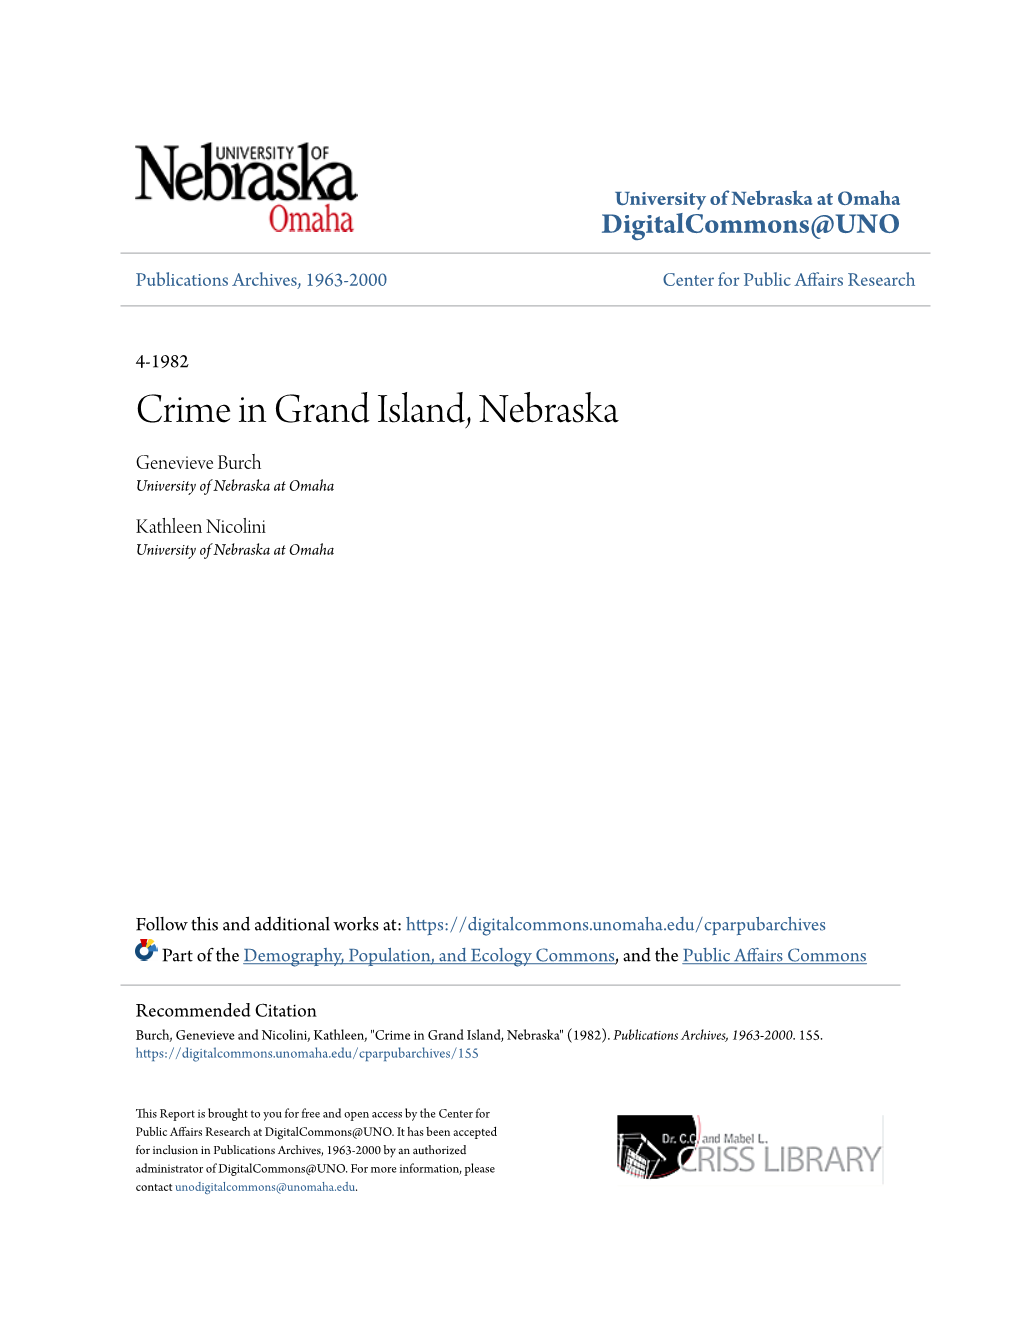 Crime in Grand Island, Nebraska Genevieve Burch University of Nebraska at Omaha